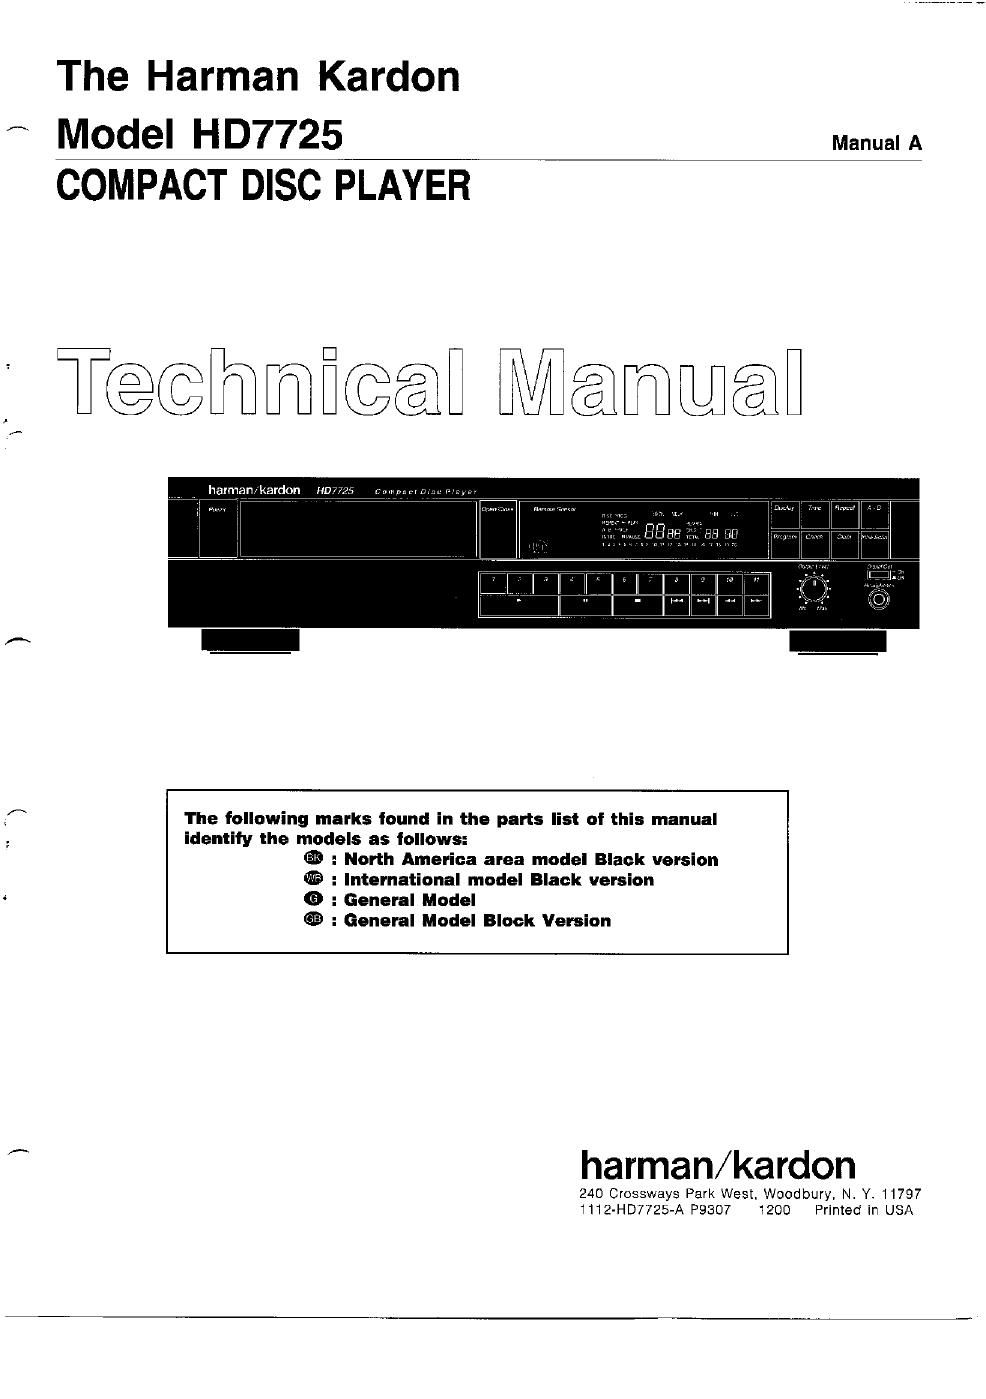 harman kardon hd 7725 service manual